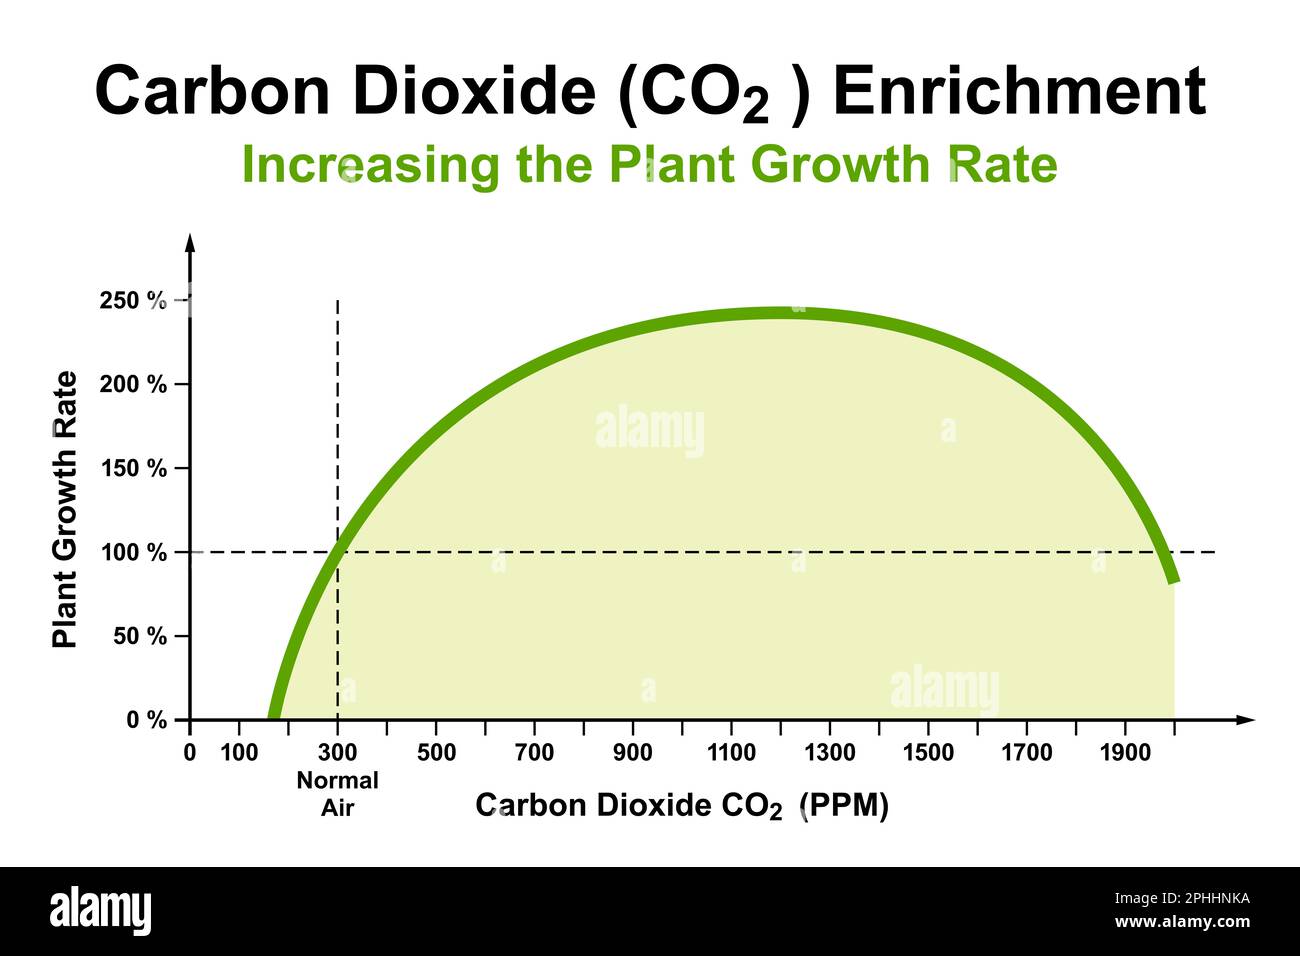 Die Anreicherung von Kohlendioxid (CO2) auf etwa 1100 ppm im Gewächshausanbau zur Förderung des Pflanzenwachstums, das seit fast 100 Jahren bekannt ist. Stockfoto